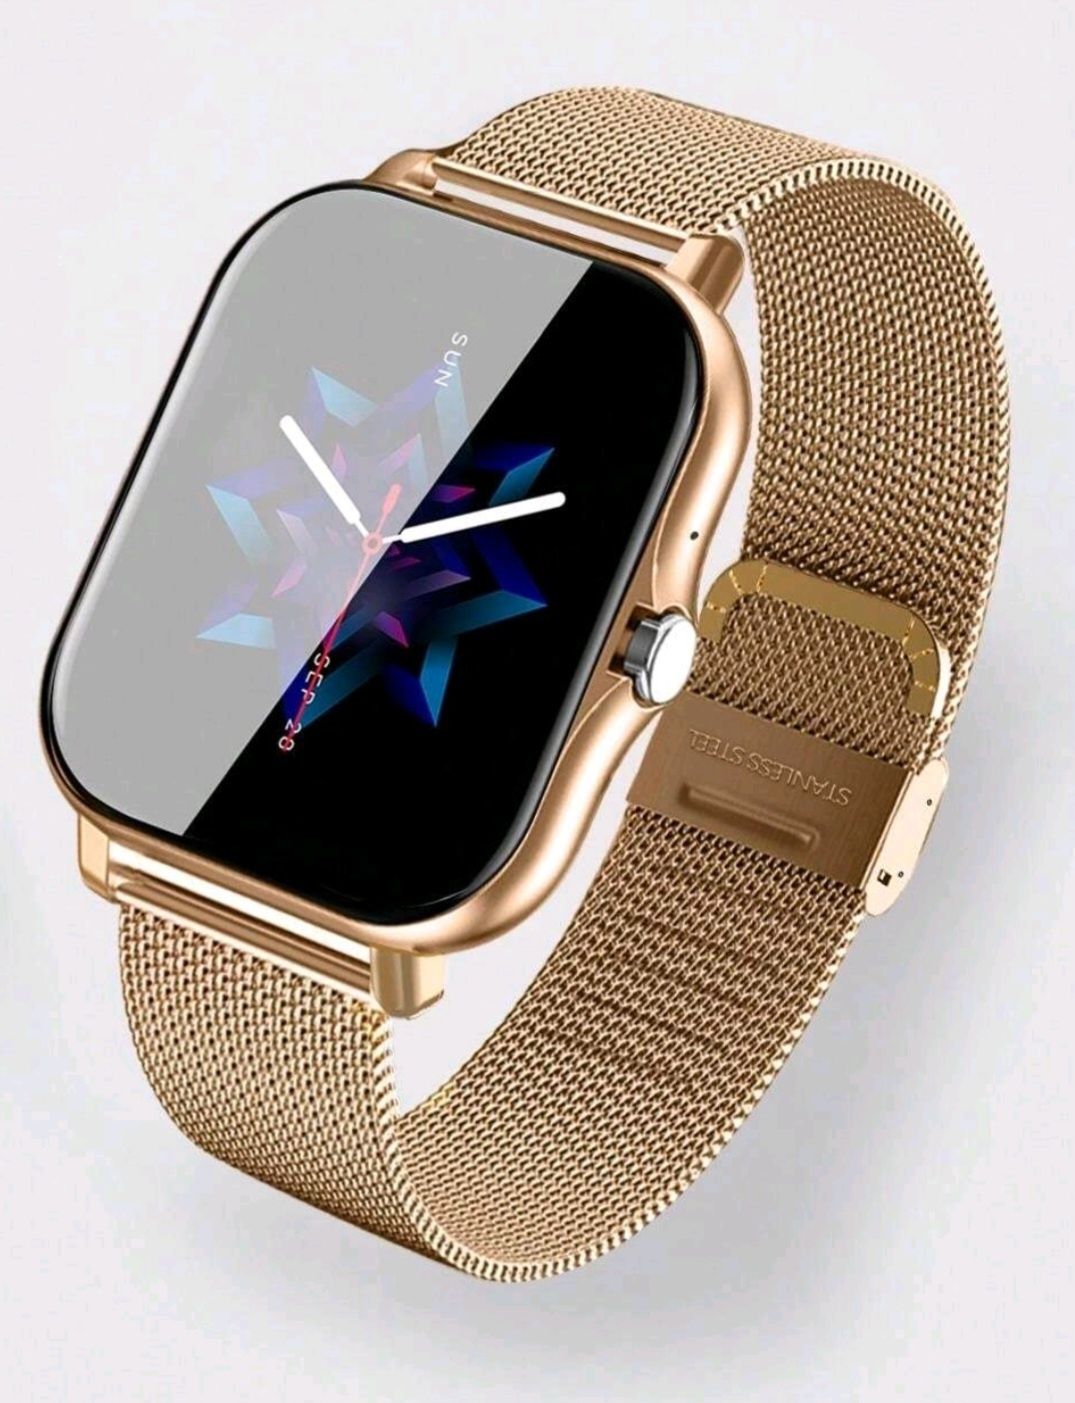 Smartwatch na złotej bransolecie